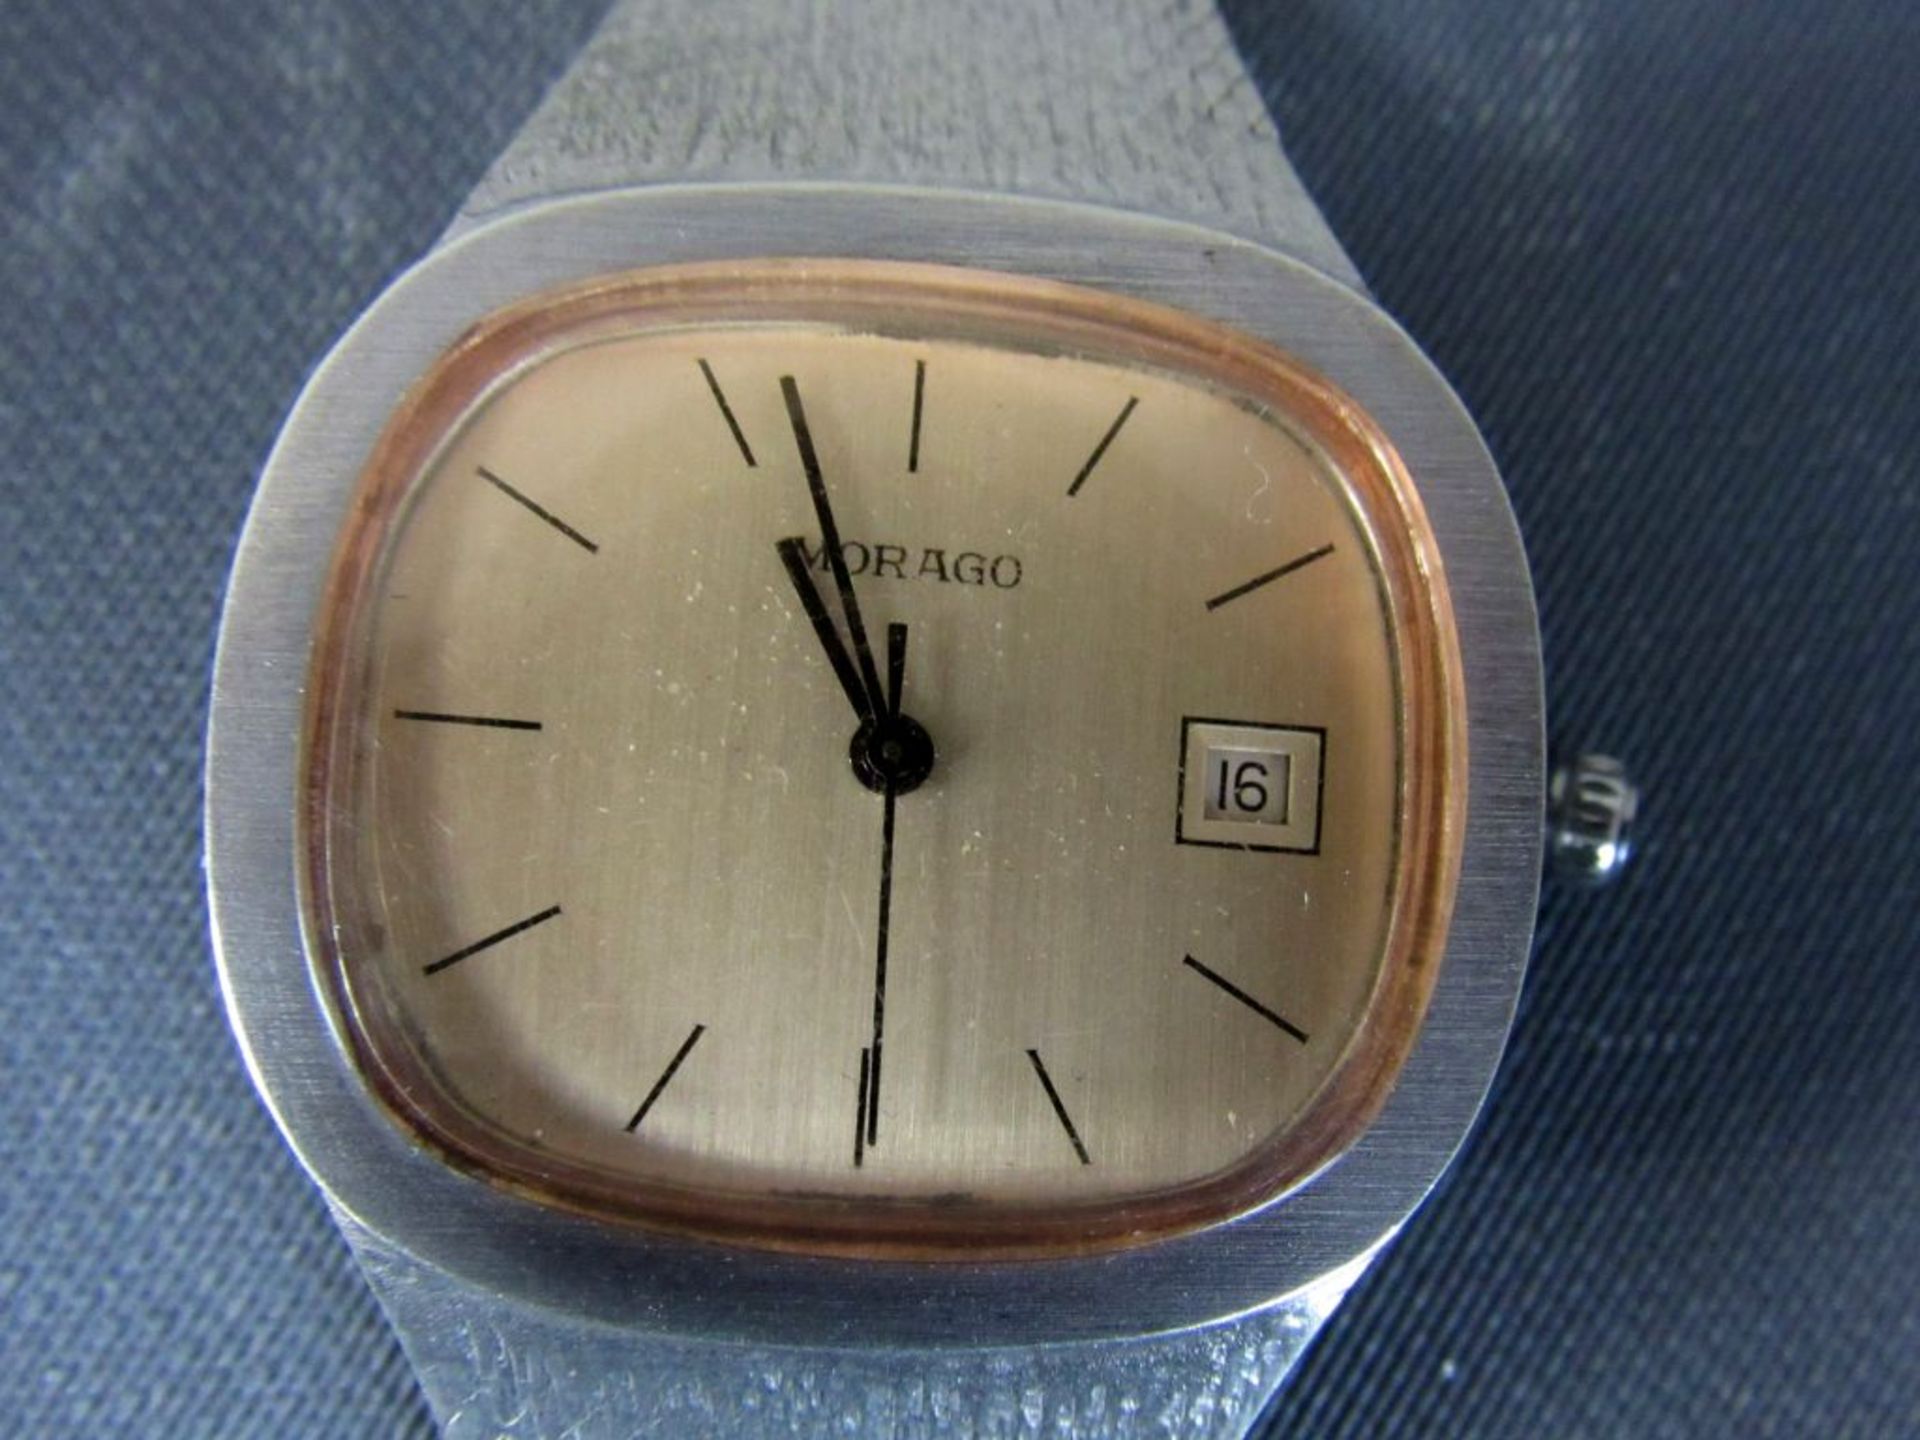 Damen Uhr 800er Silber Morago läuft an - Bild 2 aus 10